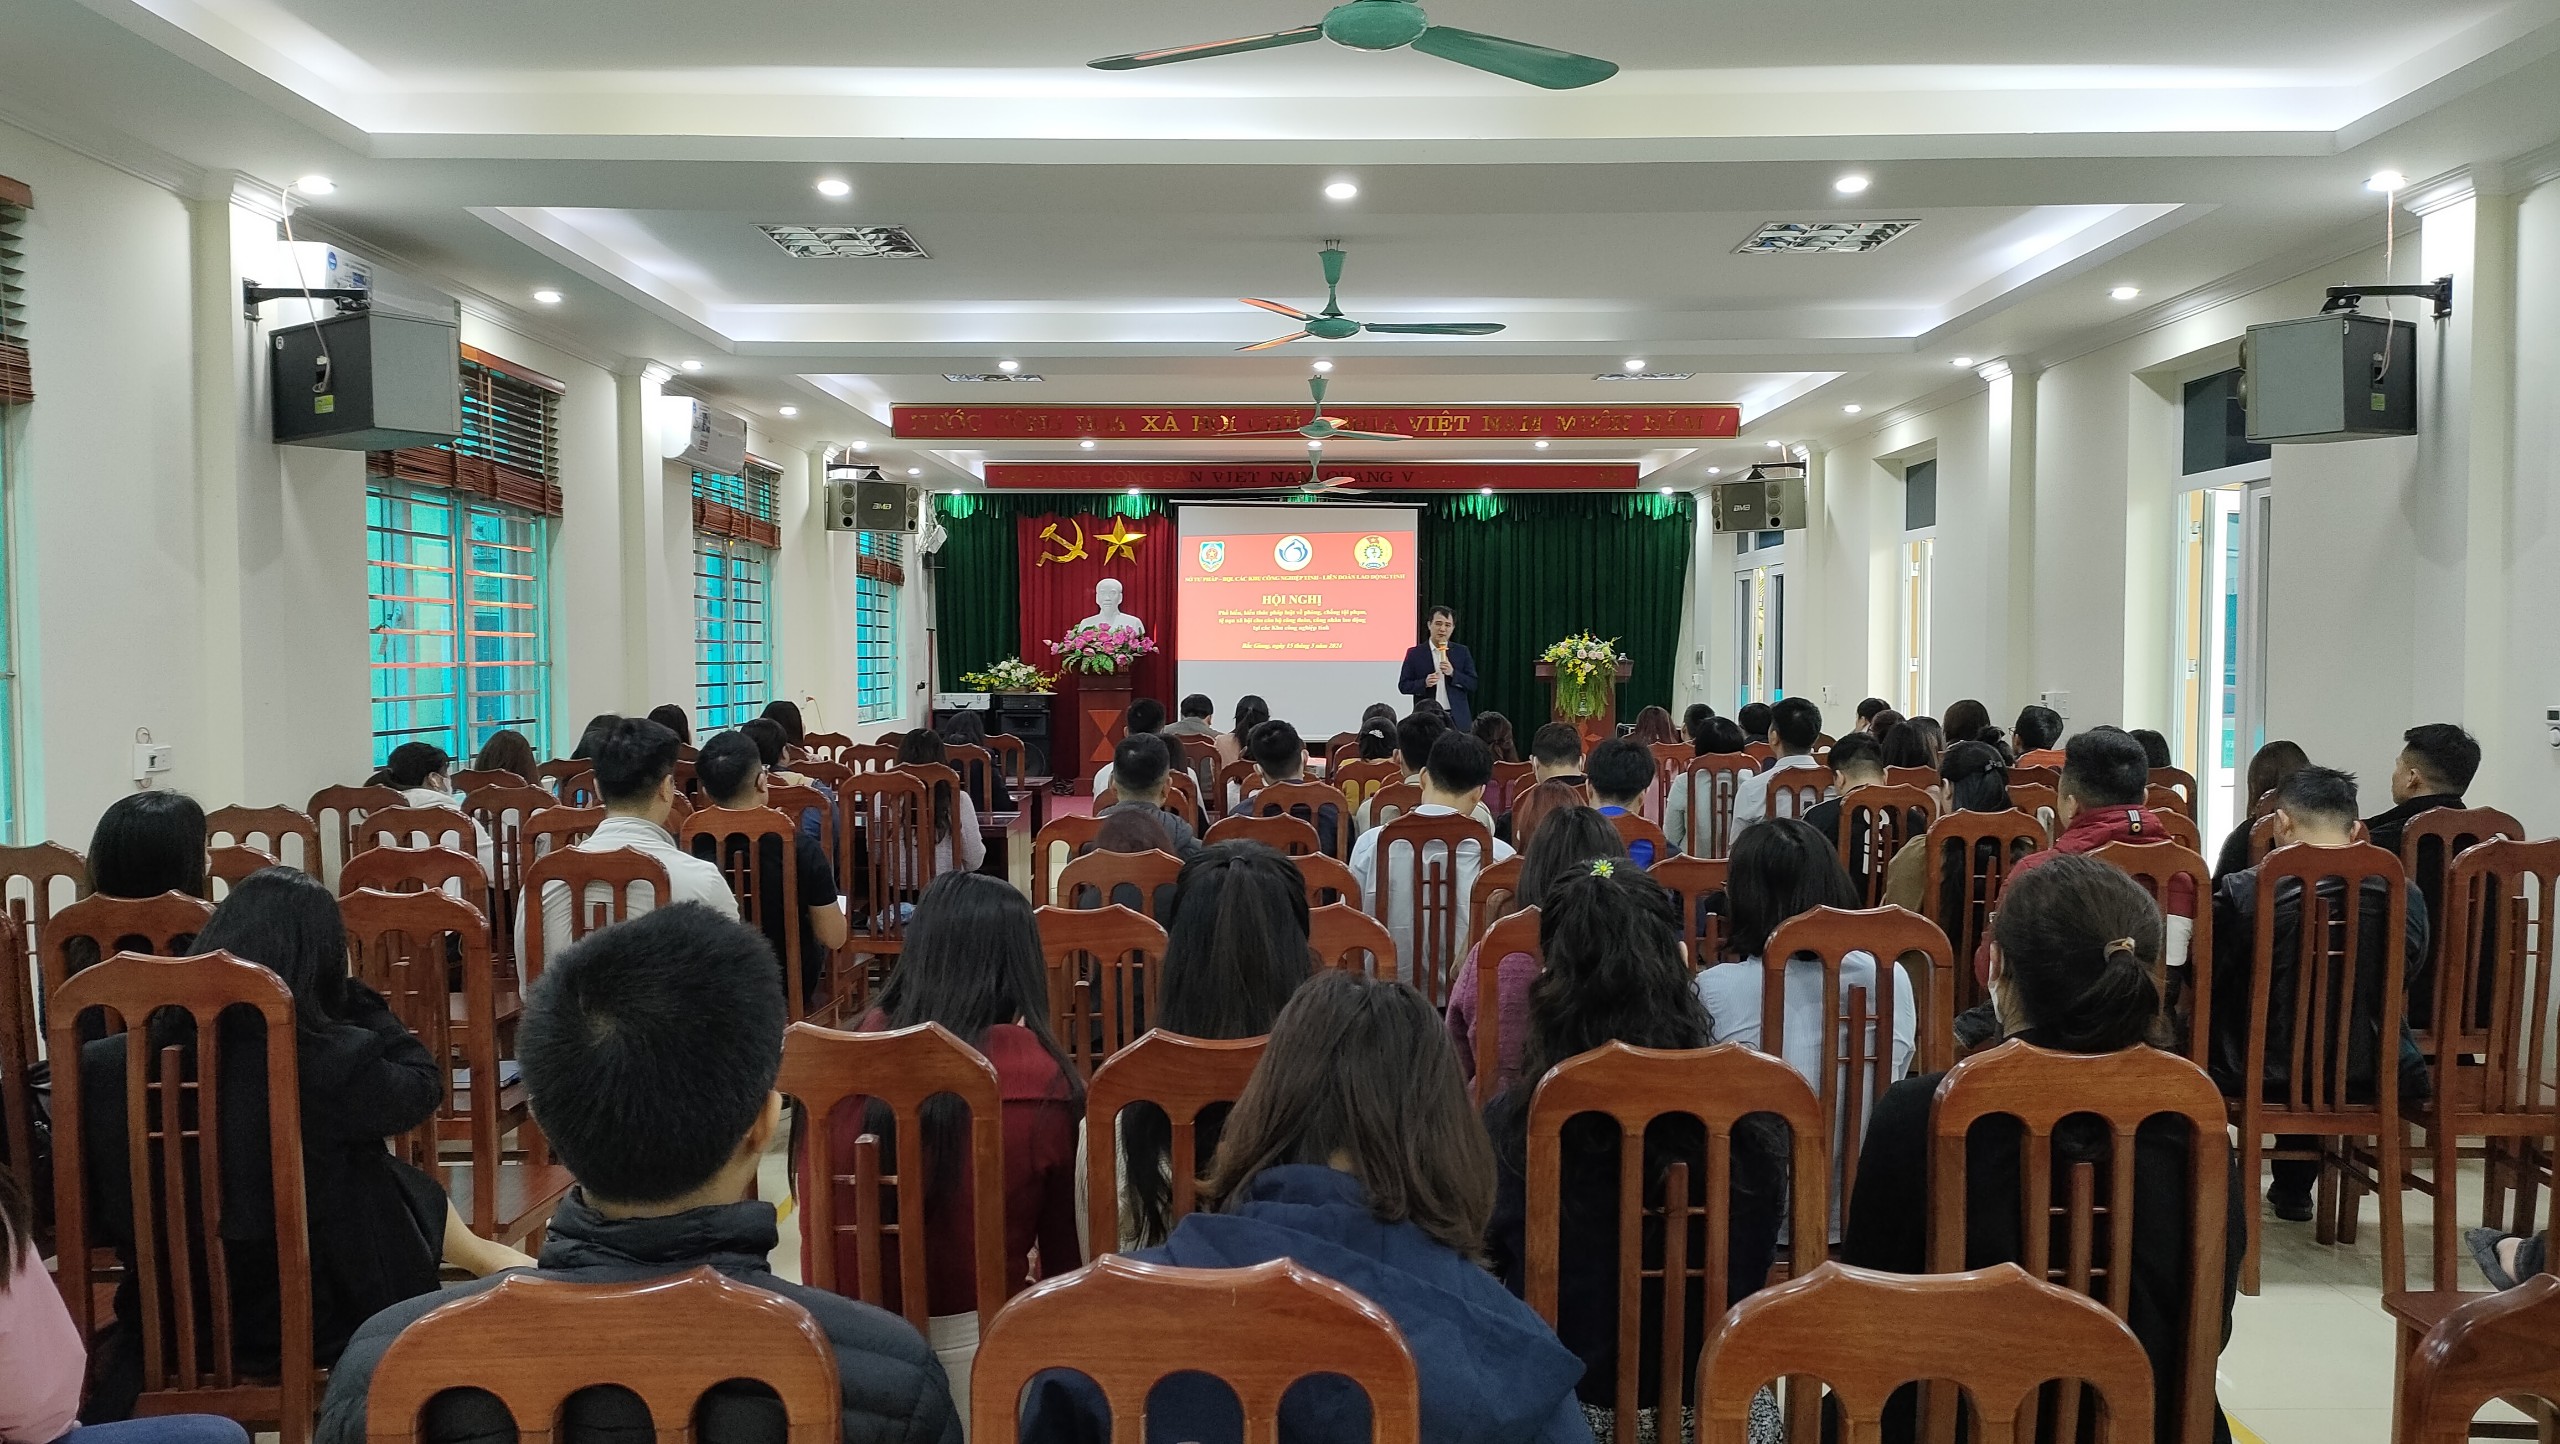 Hội nghị tuyên truyền, phổ biến về phòng, chống tội phạm, tệ nạn xã hội tại các Khu công nghiệp trên địa bàn tỉnh Bắc Giang|https://bqlkcn.bacgiang.gov.vn/chi-tiet-tin-tuc/-/asset_publisher/xme8LCPEx4VA/content/hoi-nghi-tuyen-truyen-pho-bien-ve-phong-chong-toi-pham-te-nan-xa-hoi-tai-cac-khu-cong-nghiep-tren-ia-ban-tinh-bac-giang